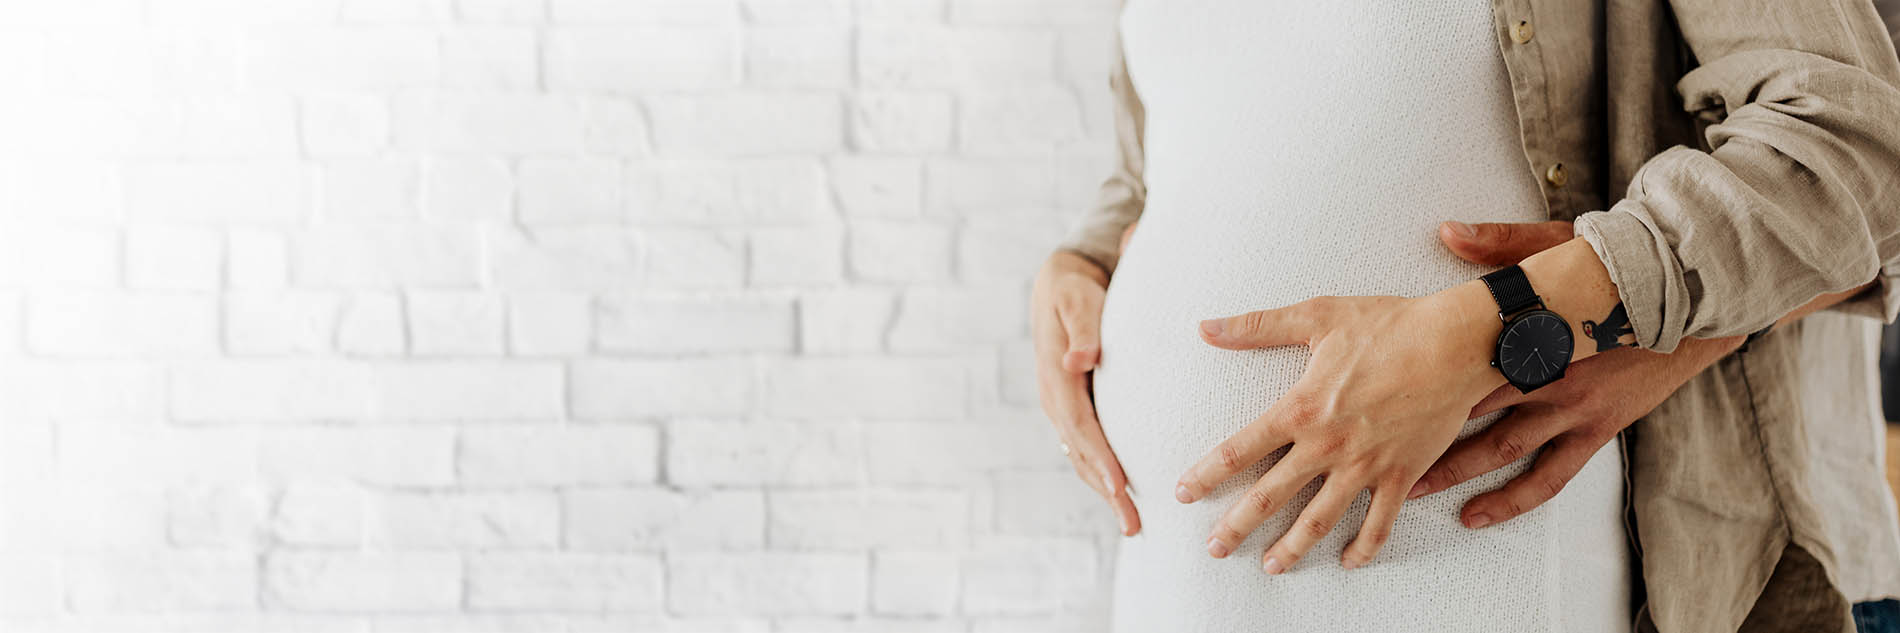 Mutterschutz für schwangere und stillende Studentinnen